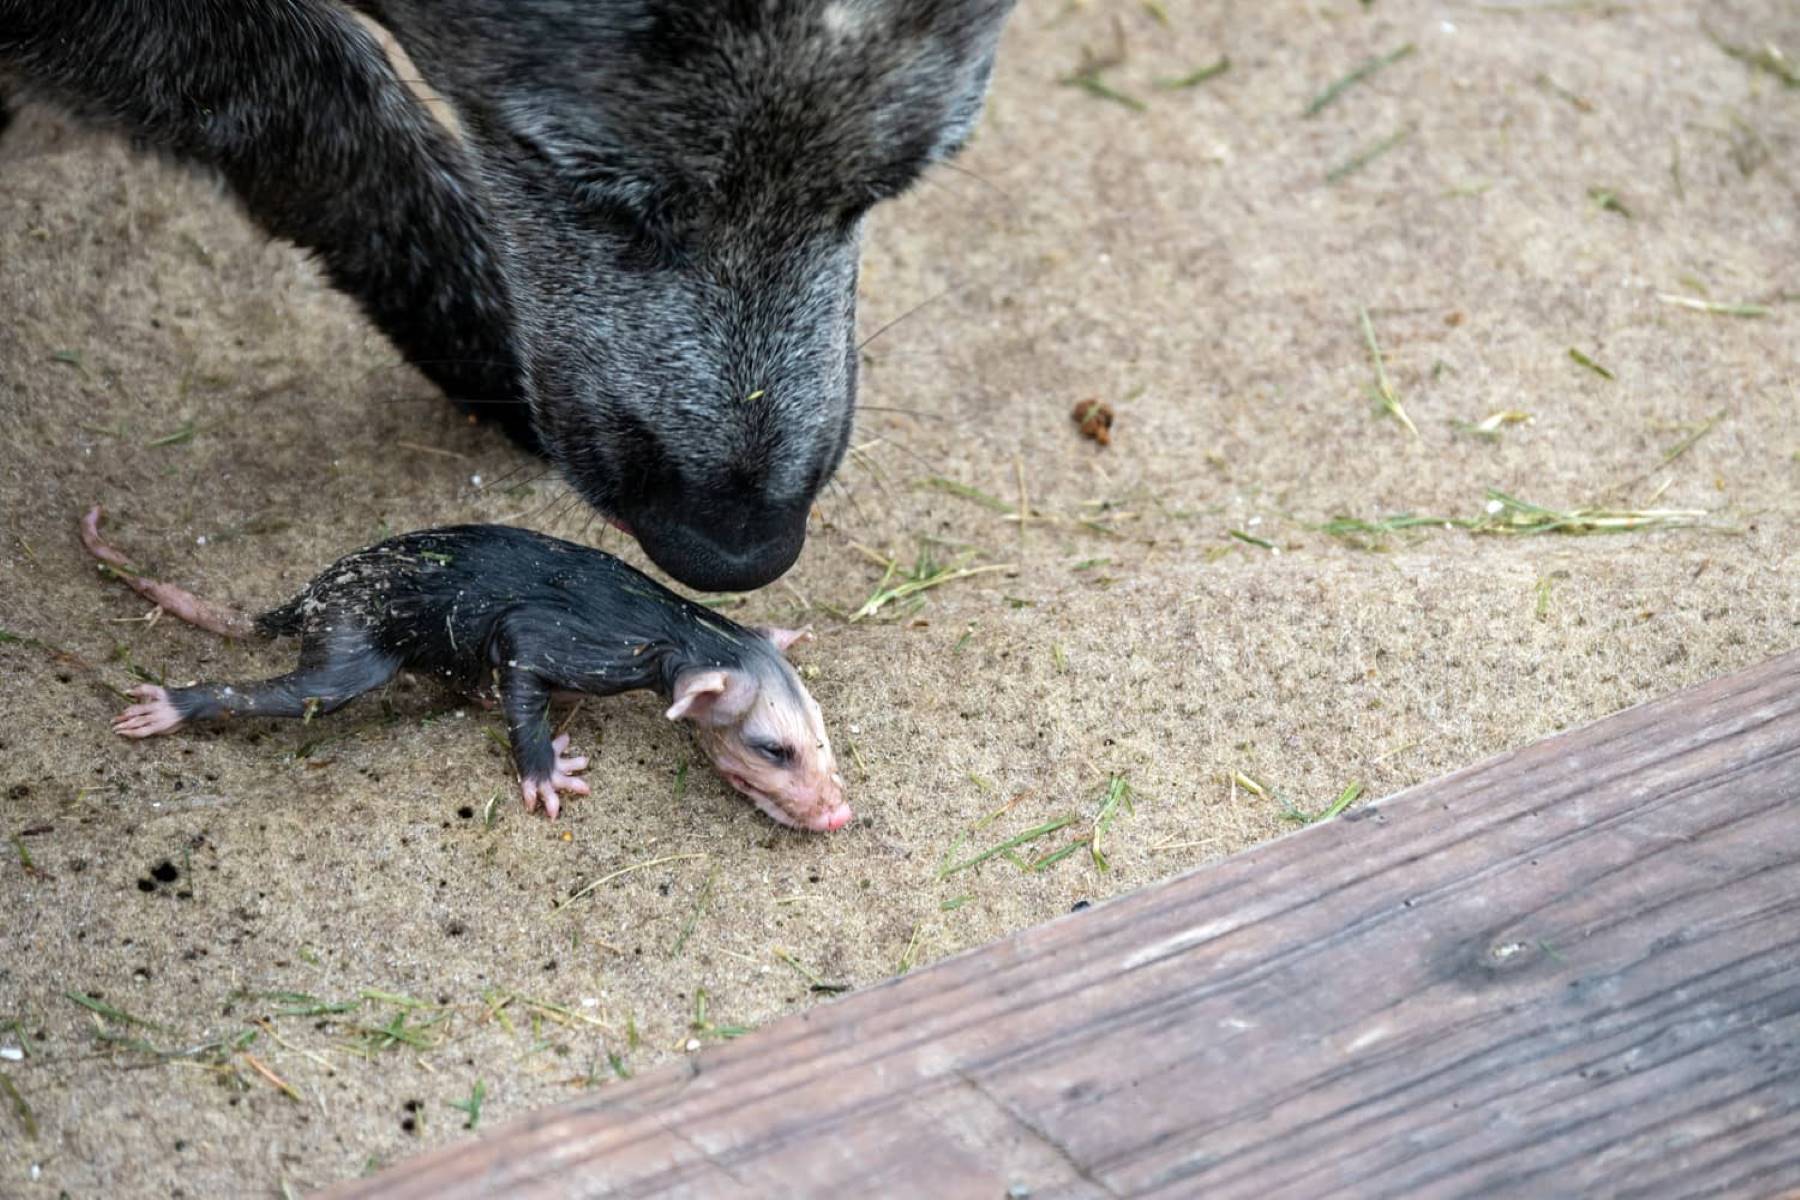 Shocking Encounter: Dog's Deadly Confrontation With A Possum